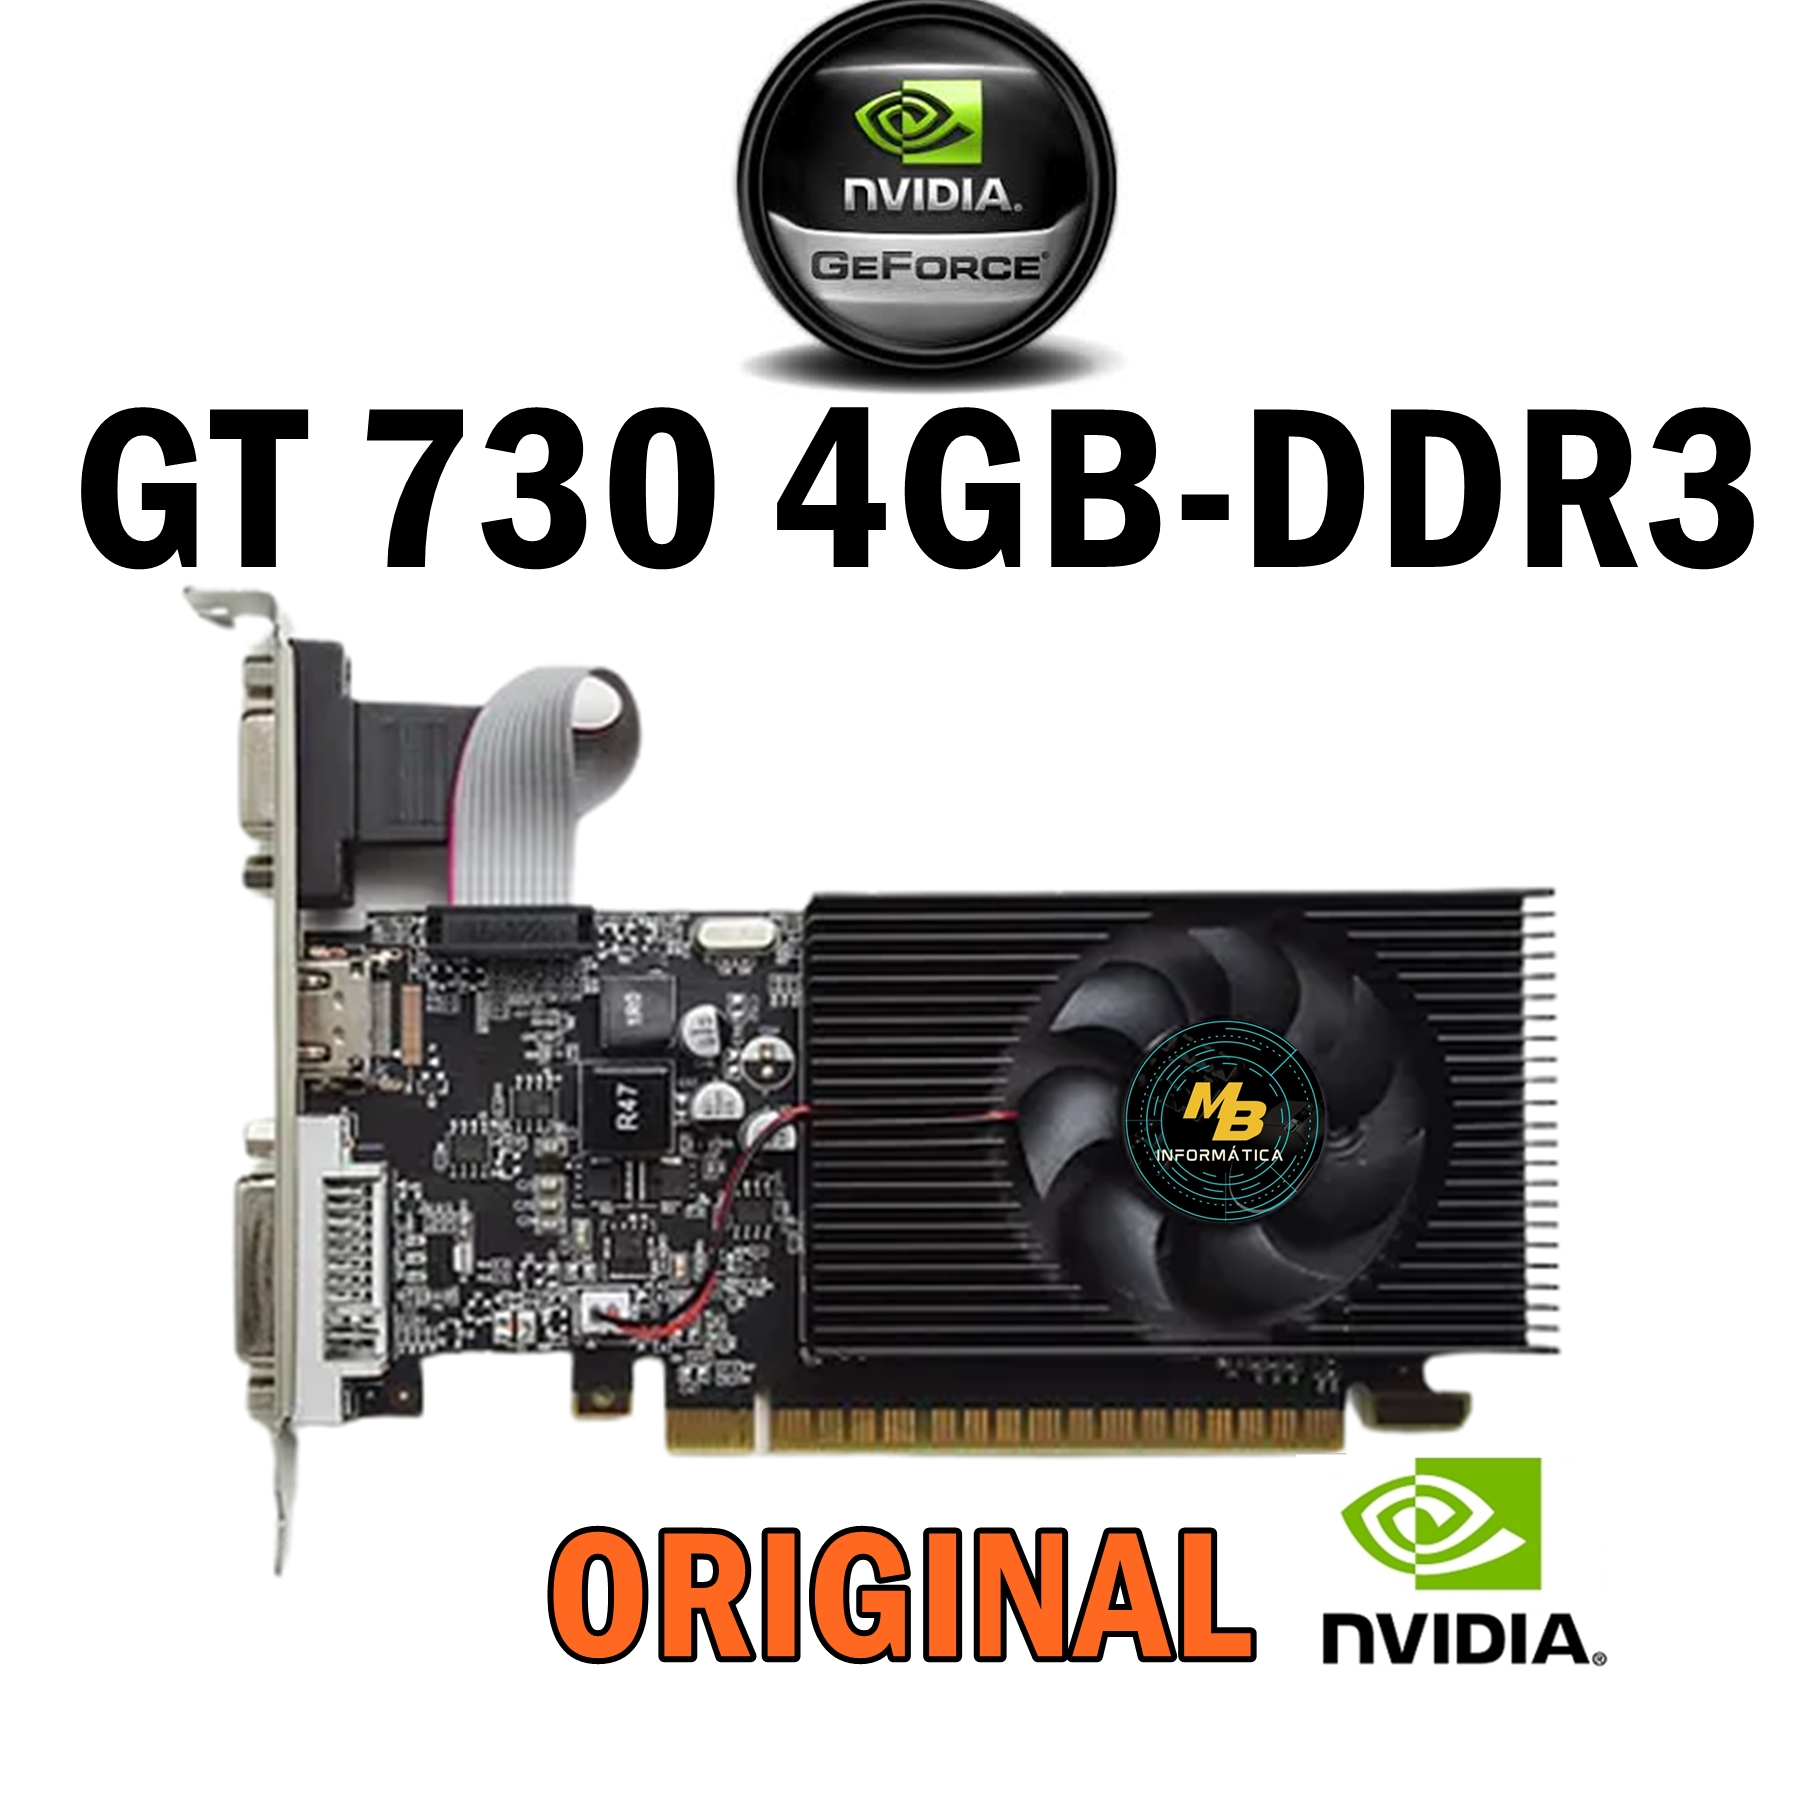 Placa De Vídeo Nvidia Geforce Duex Gt730 4gb Ddr3 128bit